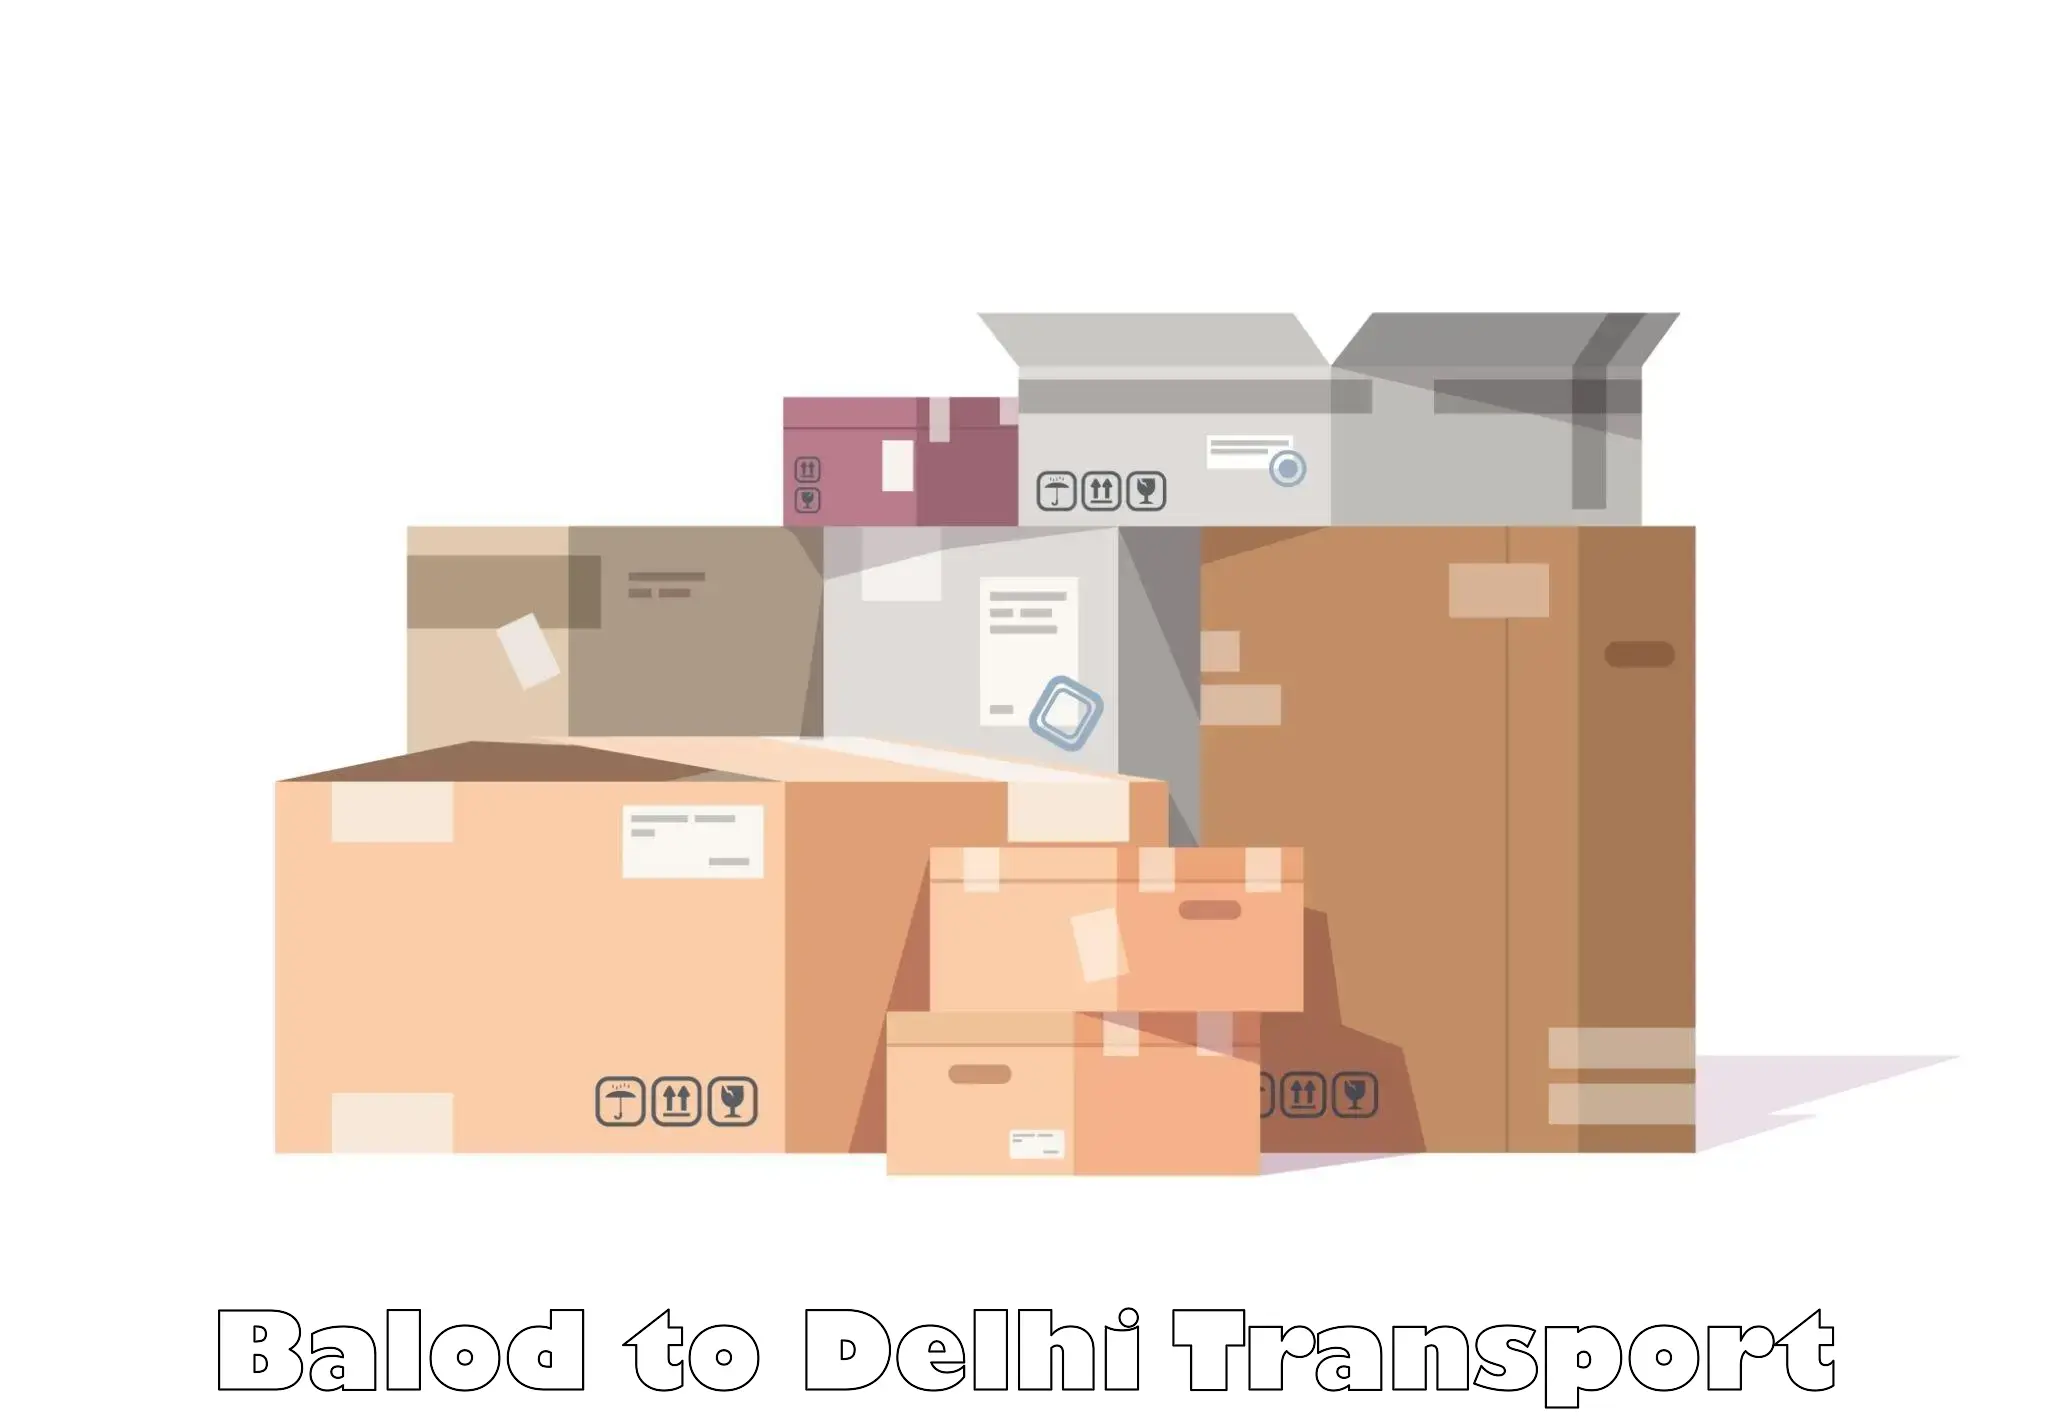 Container transport service Balod to Sarojini Nagar